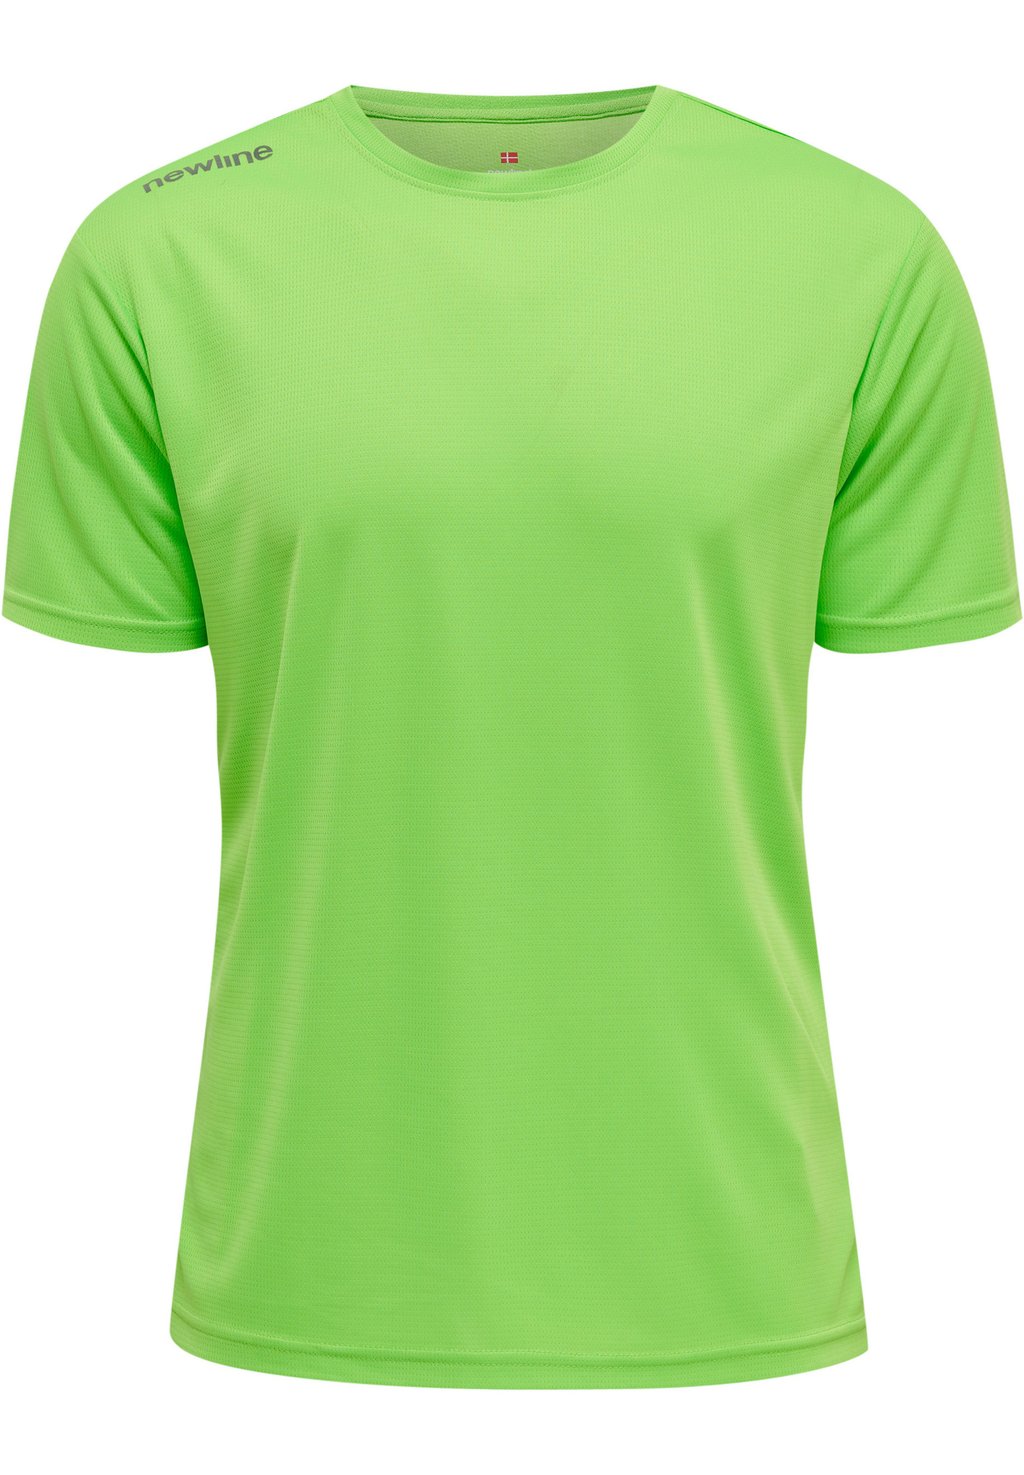 Спортивная футболка CORE FUNCTIONAL S/S Newline, цвет green flash